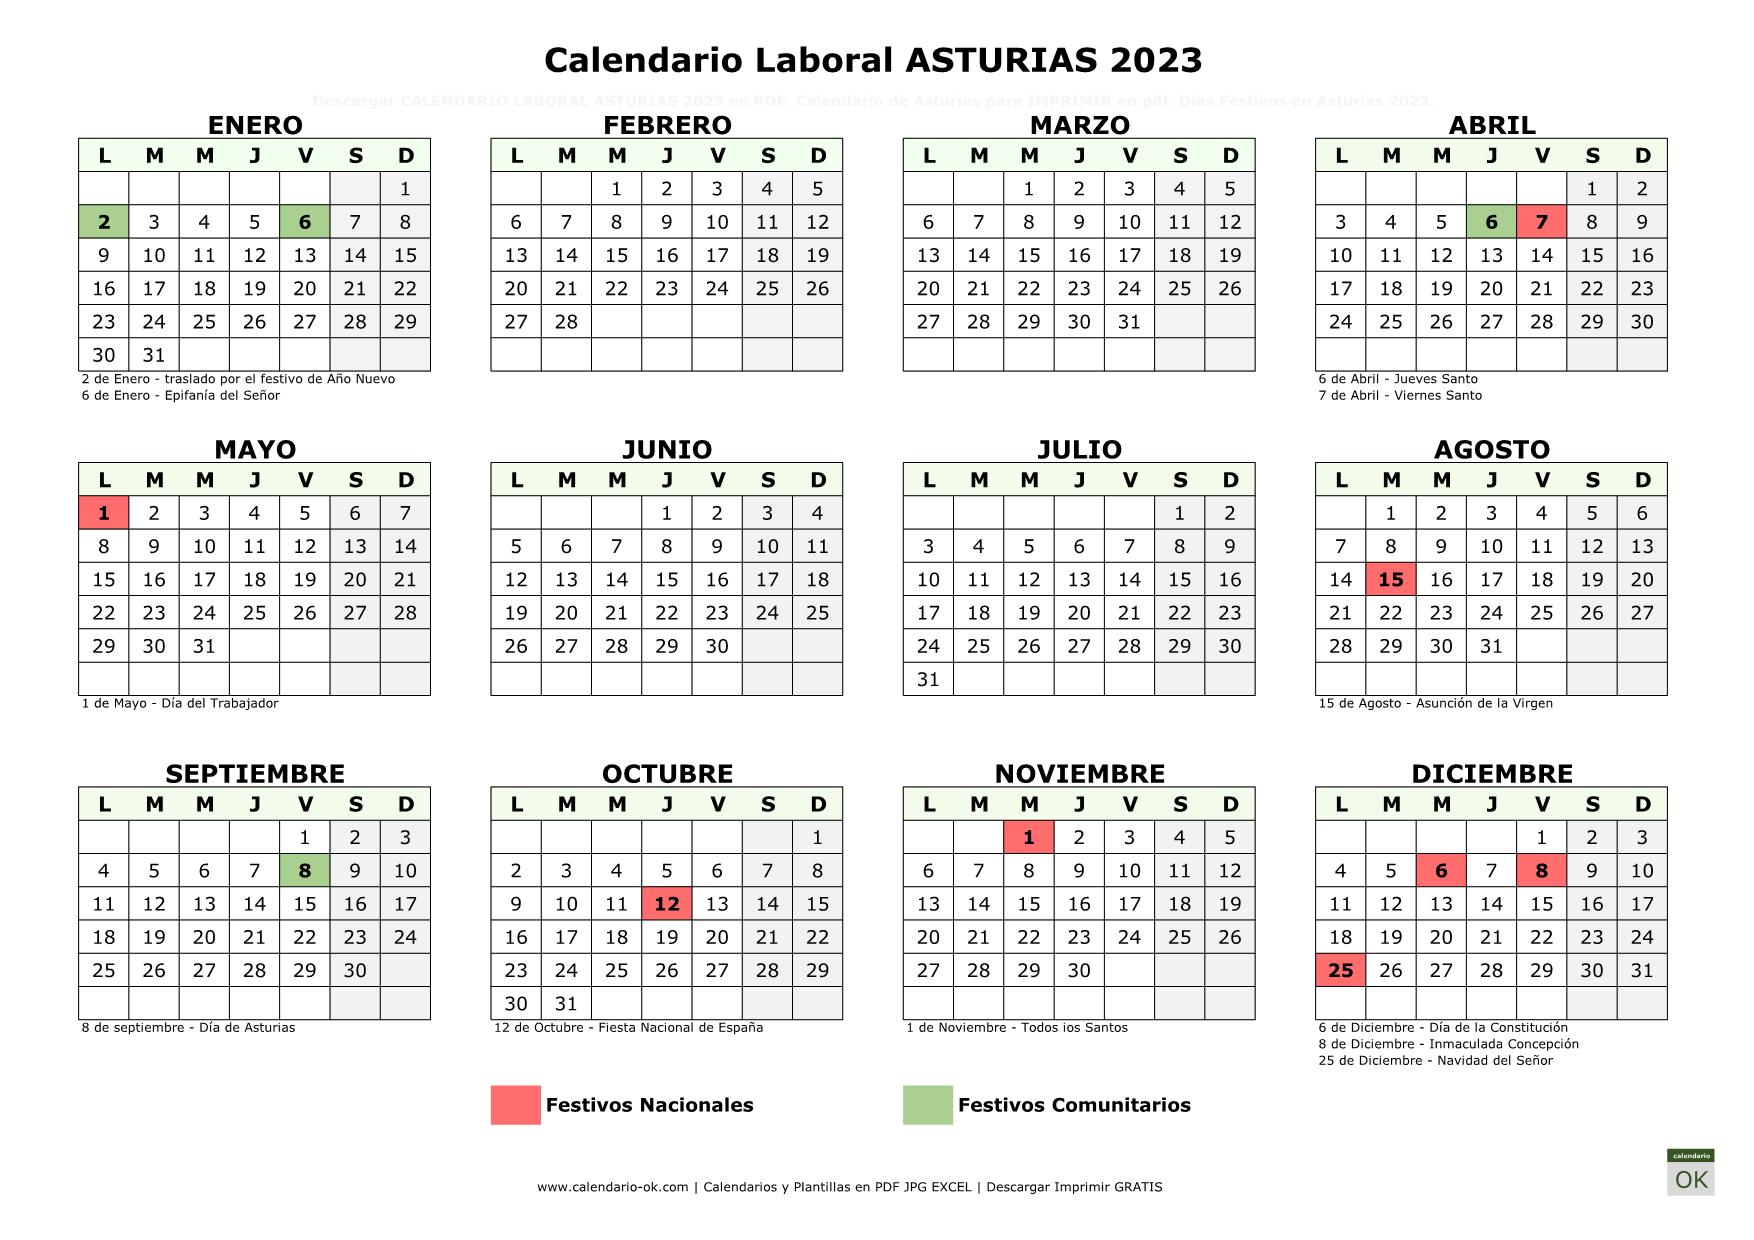 Calendario Laboral Principado de Asturias 2023 horizontal